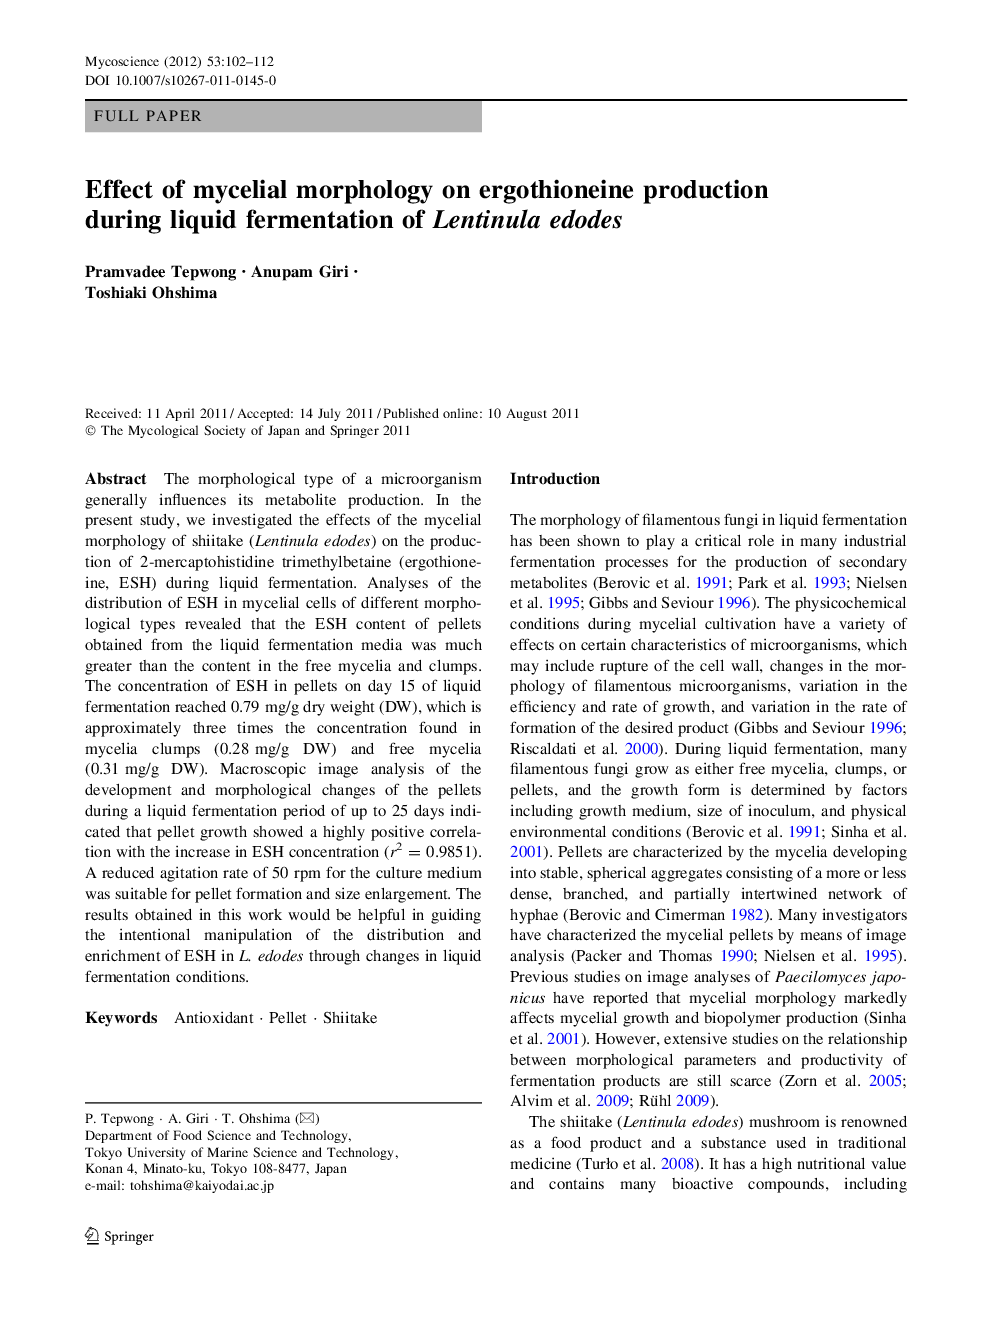 Effect of mycelial morphology on ergothioneine production during liquid fermentation of Lentinula edodes